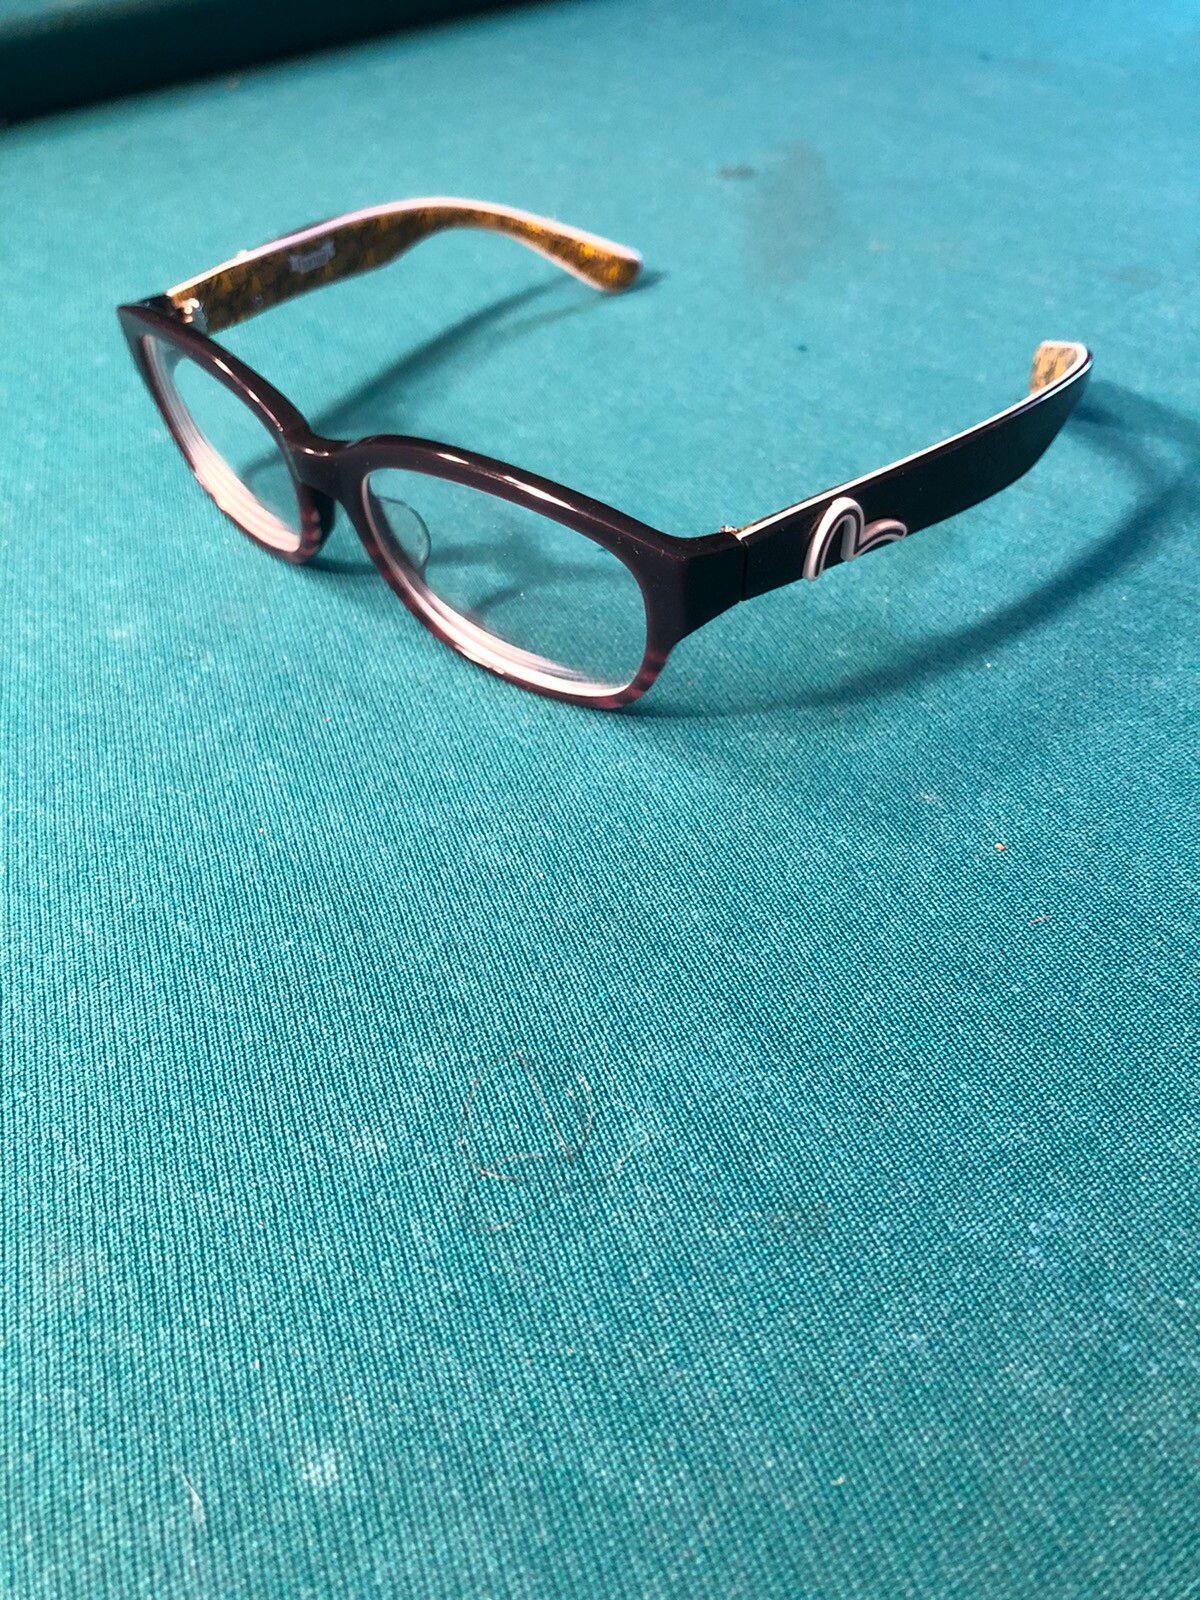 Evisu Evisu glasses *rare* | Grailed